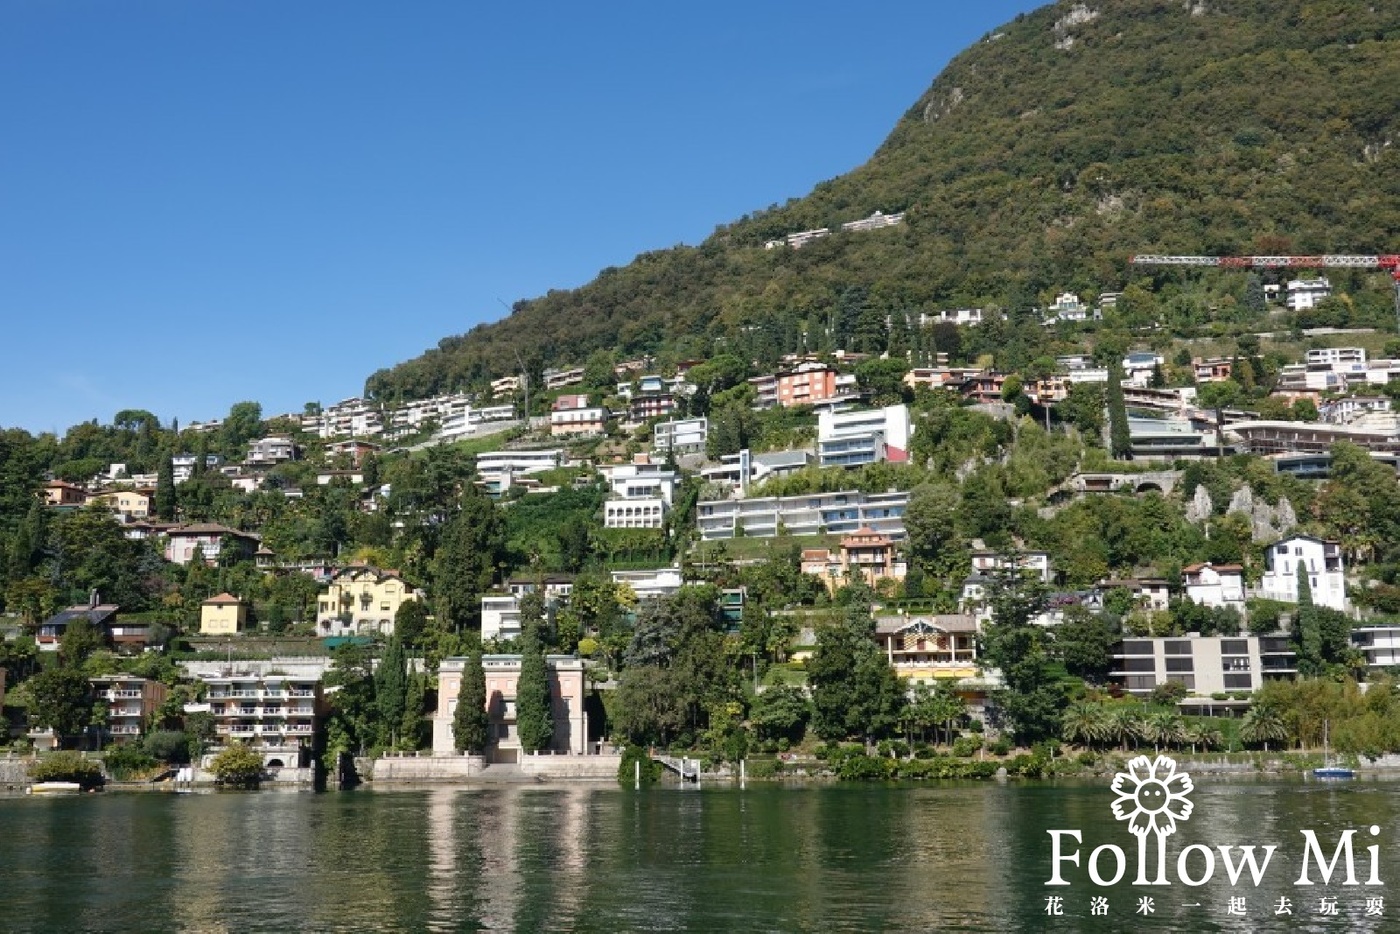 瑞士旅遊,瑞士景點,瑞士自由行,盧加諾,盧加諾湖